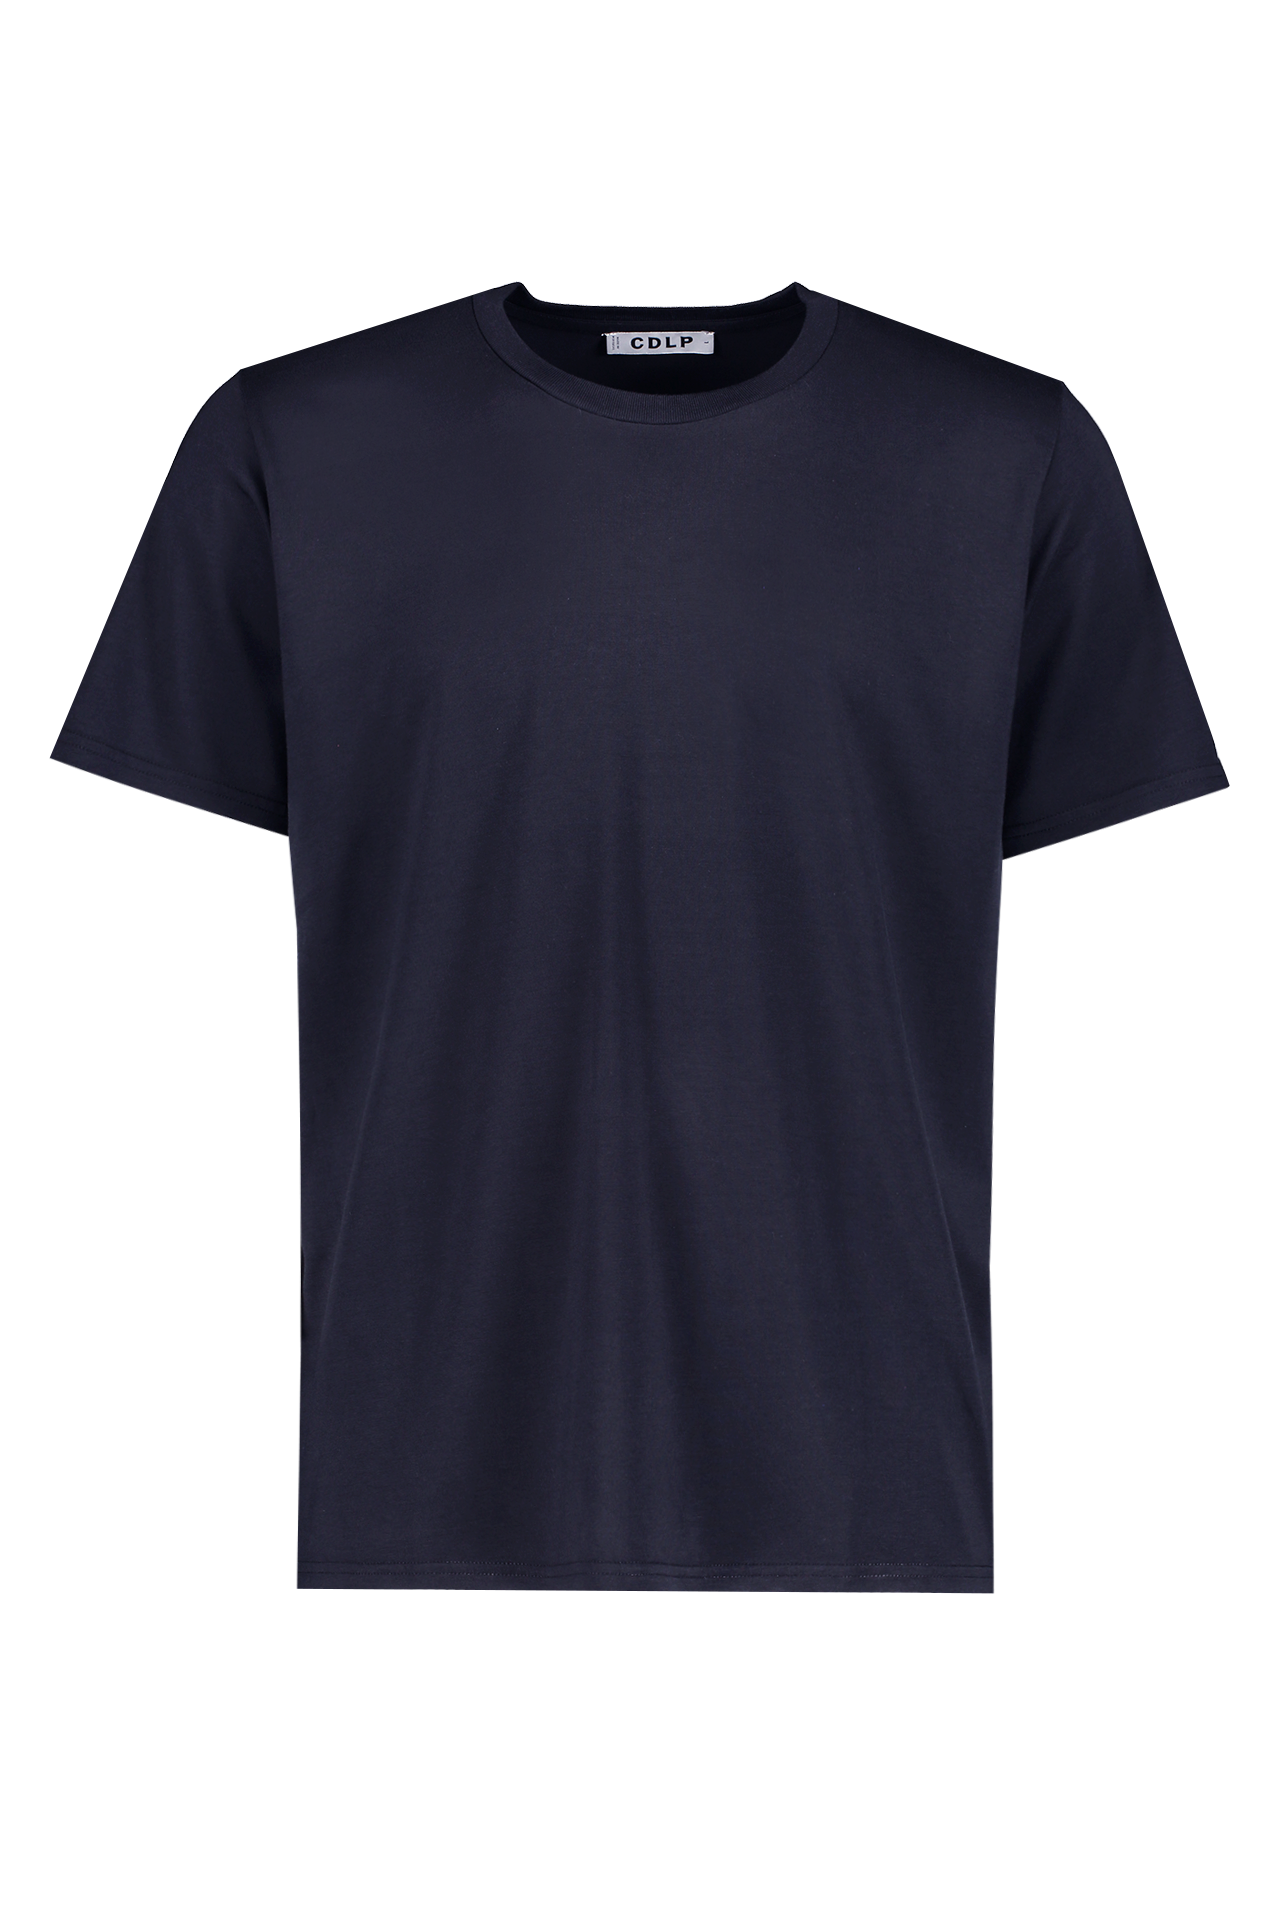 CDLP Crew Neck T-Shirt Navy Front Mannequin Image (4672740687987)